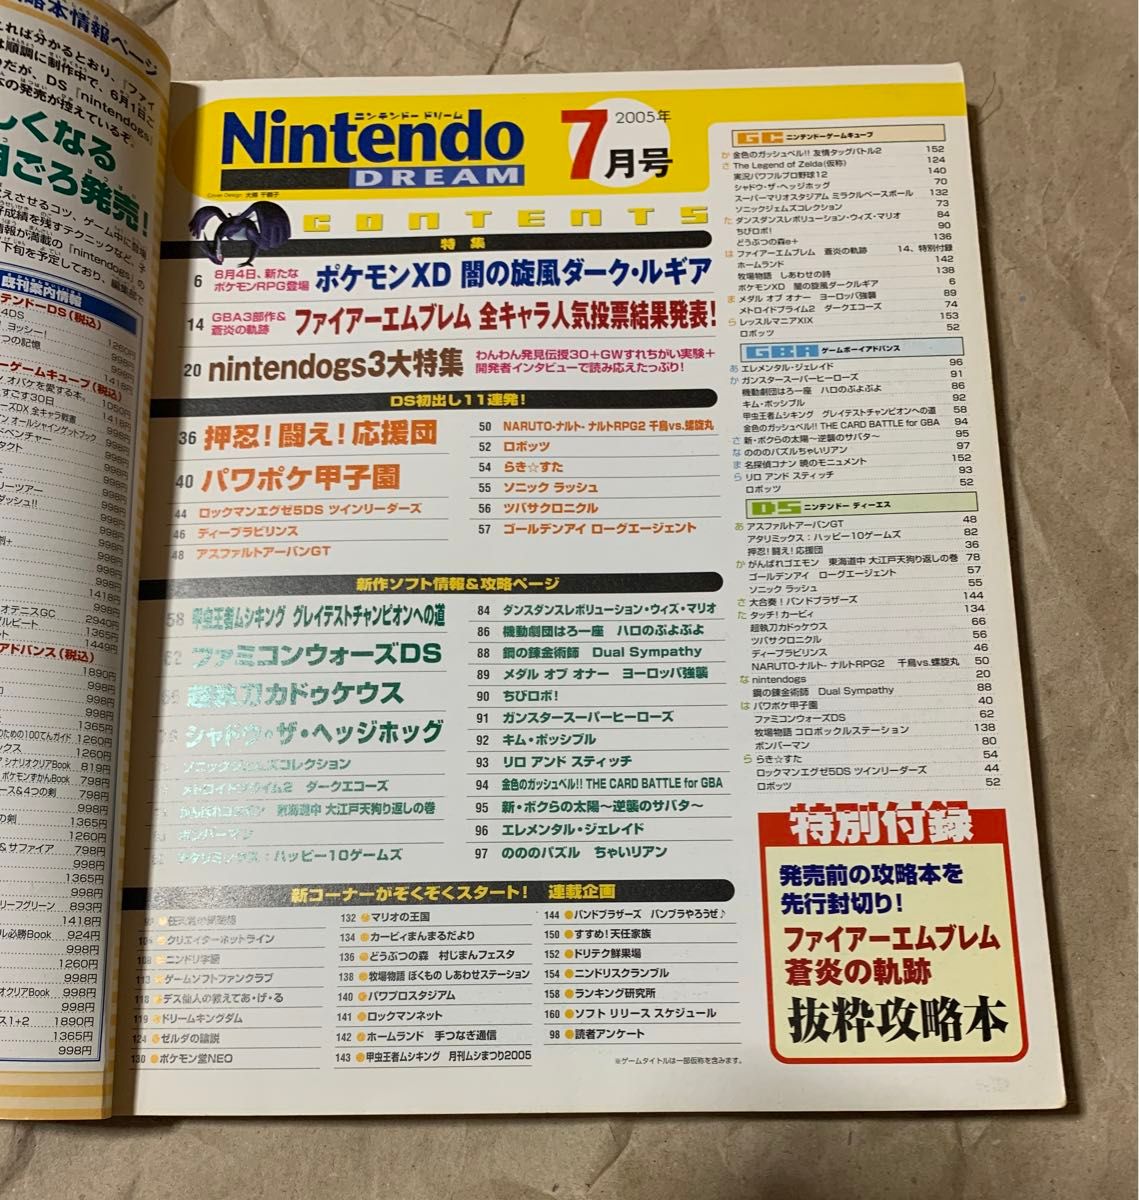 Nintendo DREAM Vol.135 2005年 7月号 ニンテンドー ドリーム ニンドリ